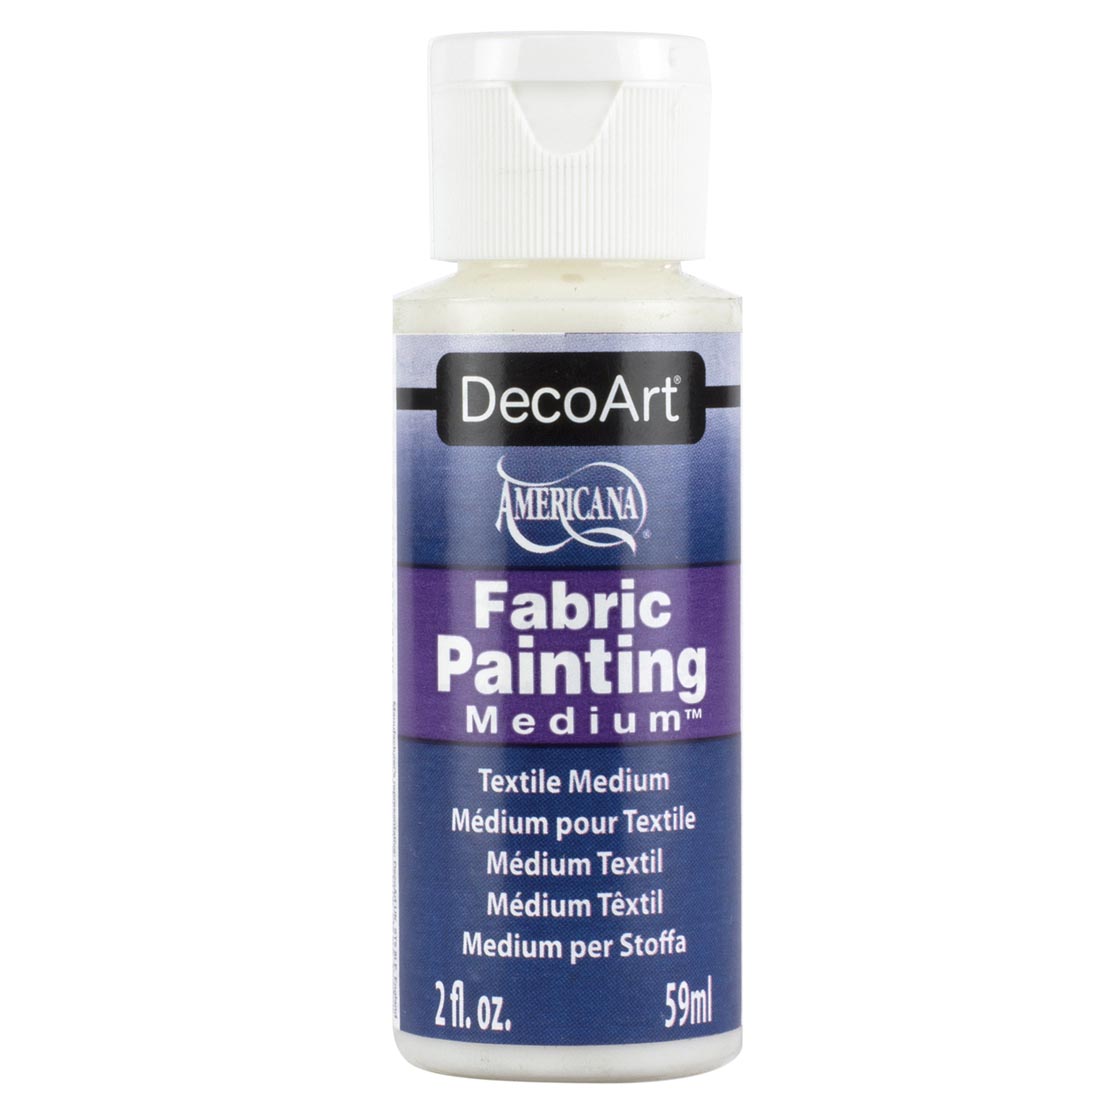 DecoArt Americana Fabric Painting Medium